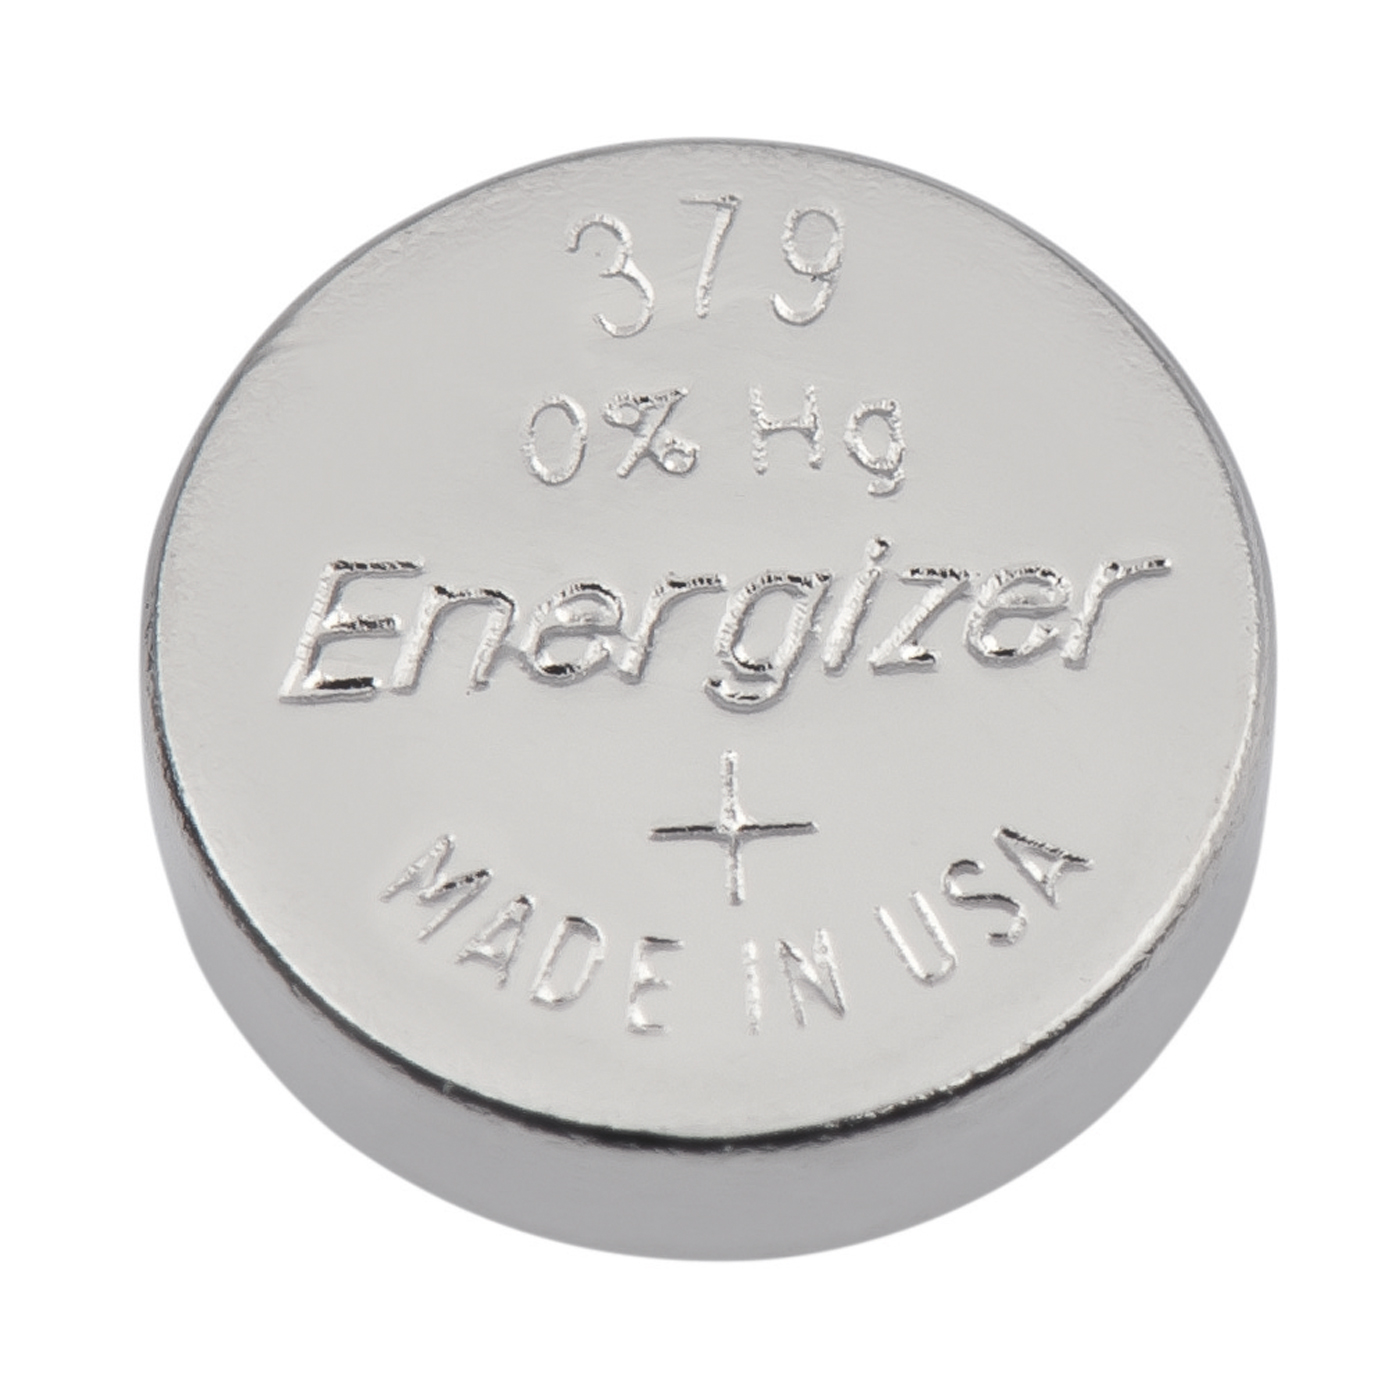 Energizer Uhrenbatterien 379, LD, ø 5,8 x 2,15 mm - 10 Stück